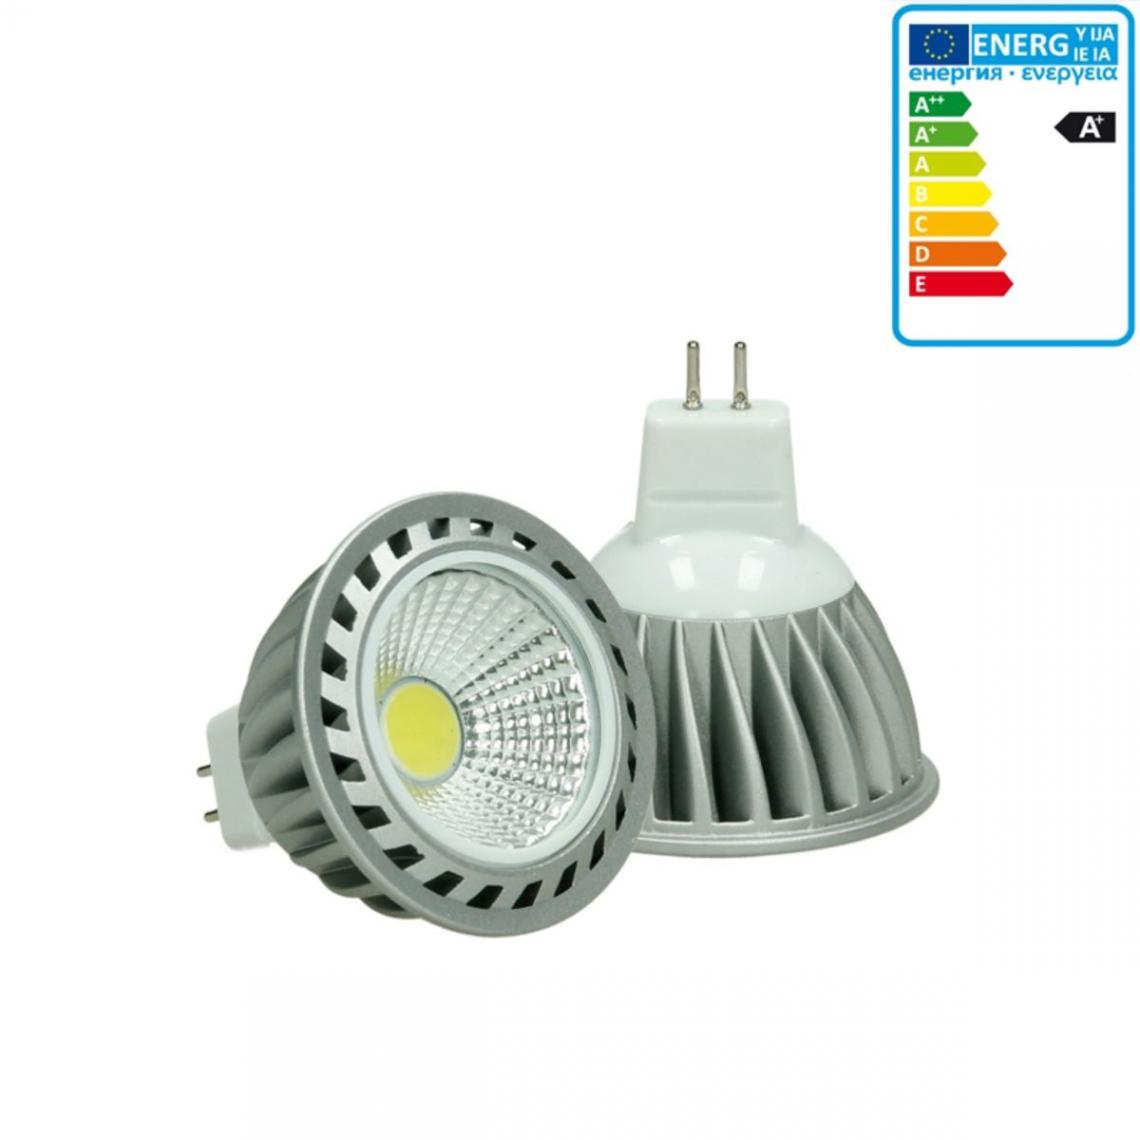 Ecd Germany - ECD Germany LED COB MR16 Ampoule Spot Projecteur 4W Blanc Neutre - Ampoules LED